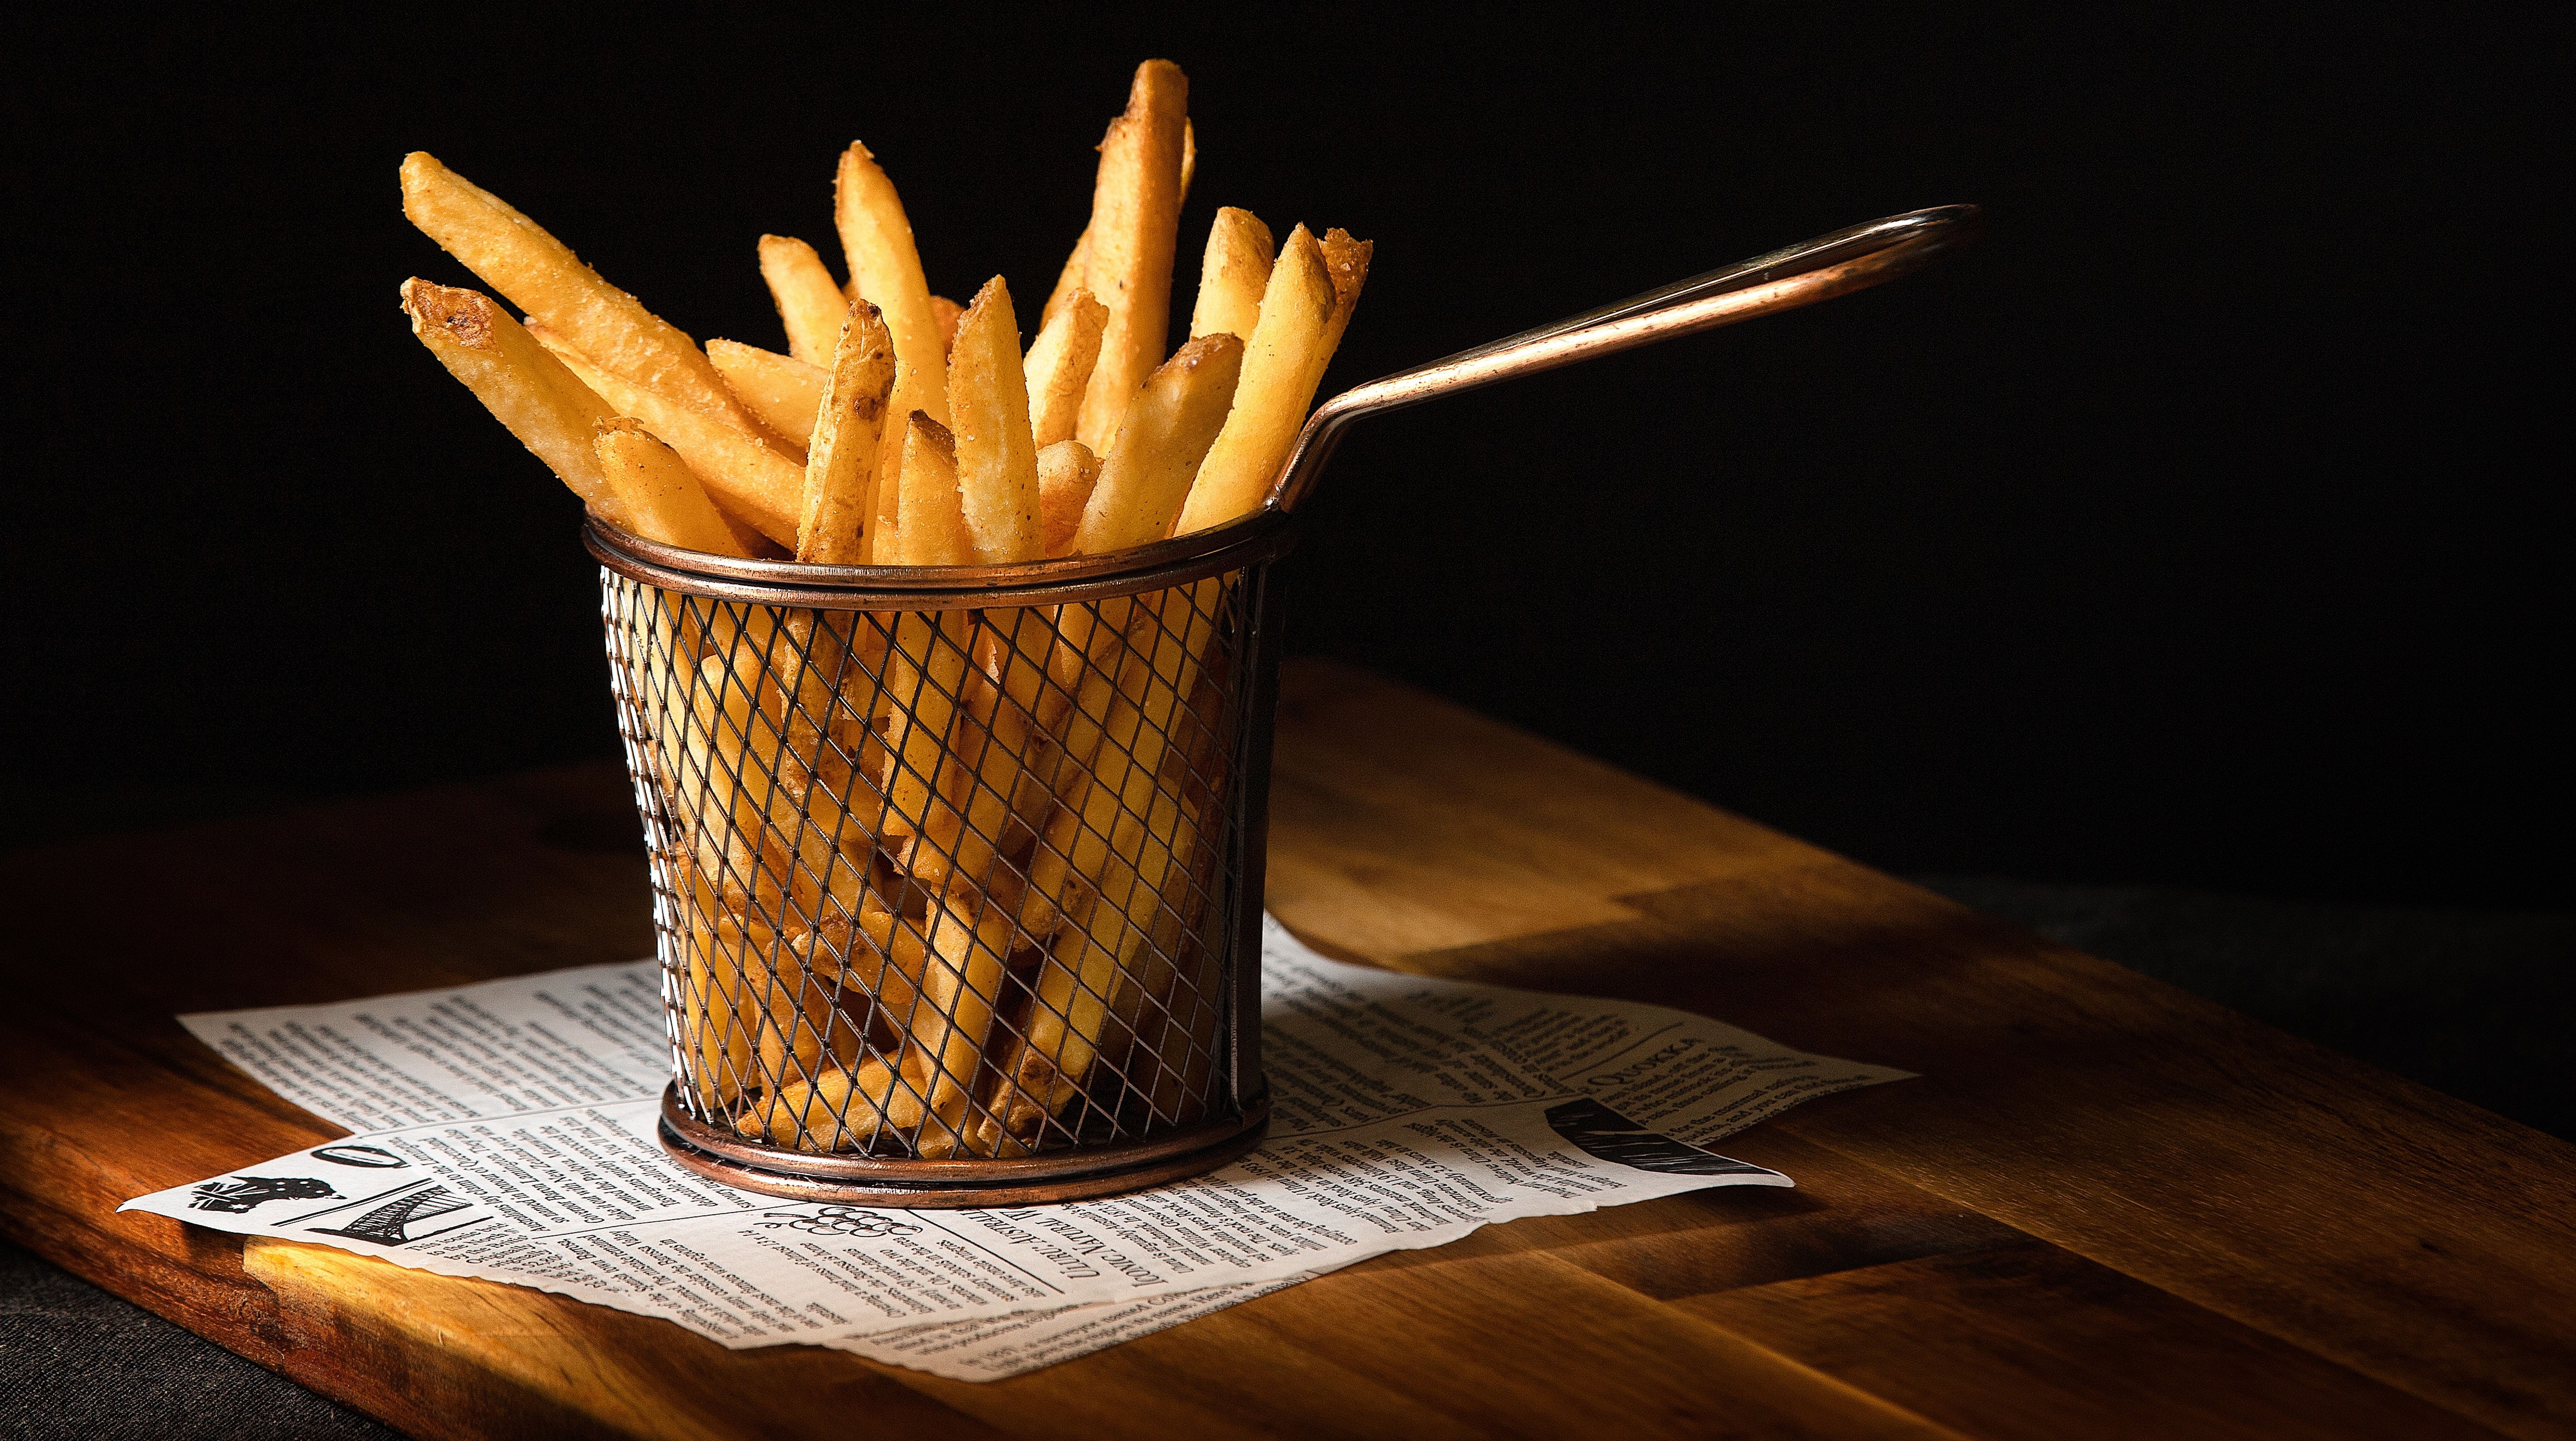 fries-in-basket